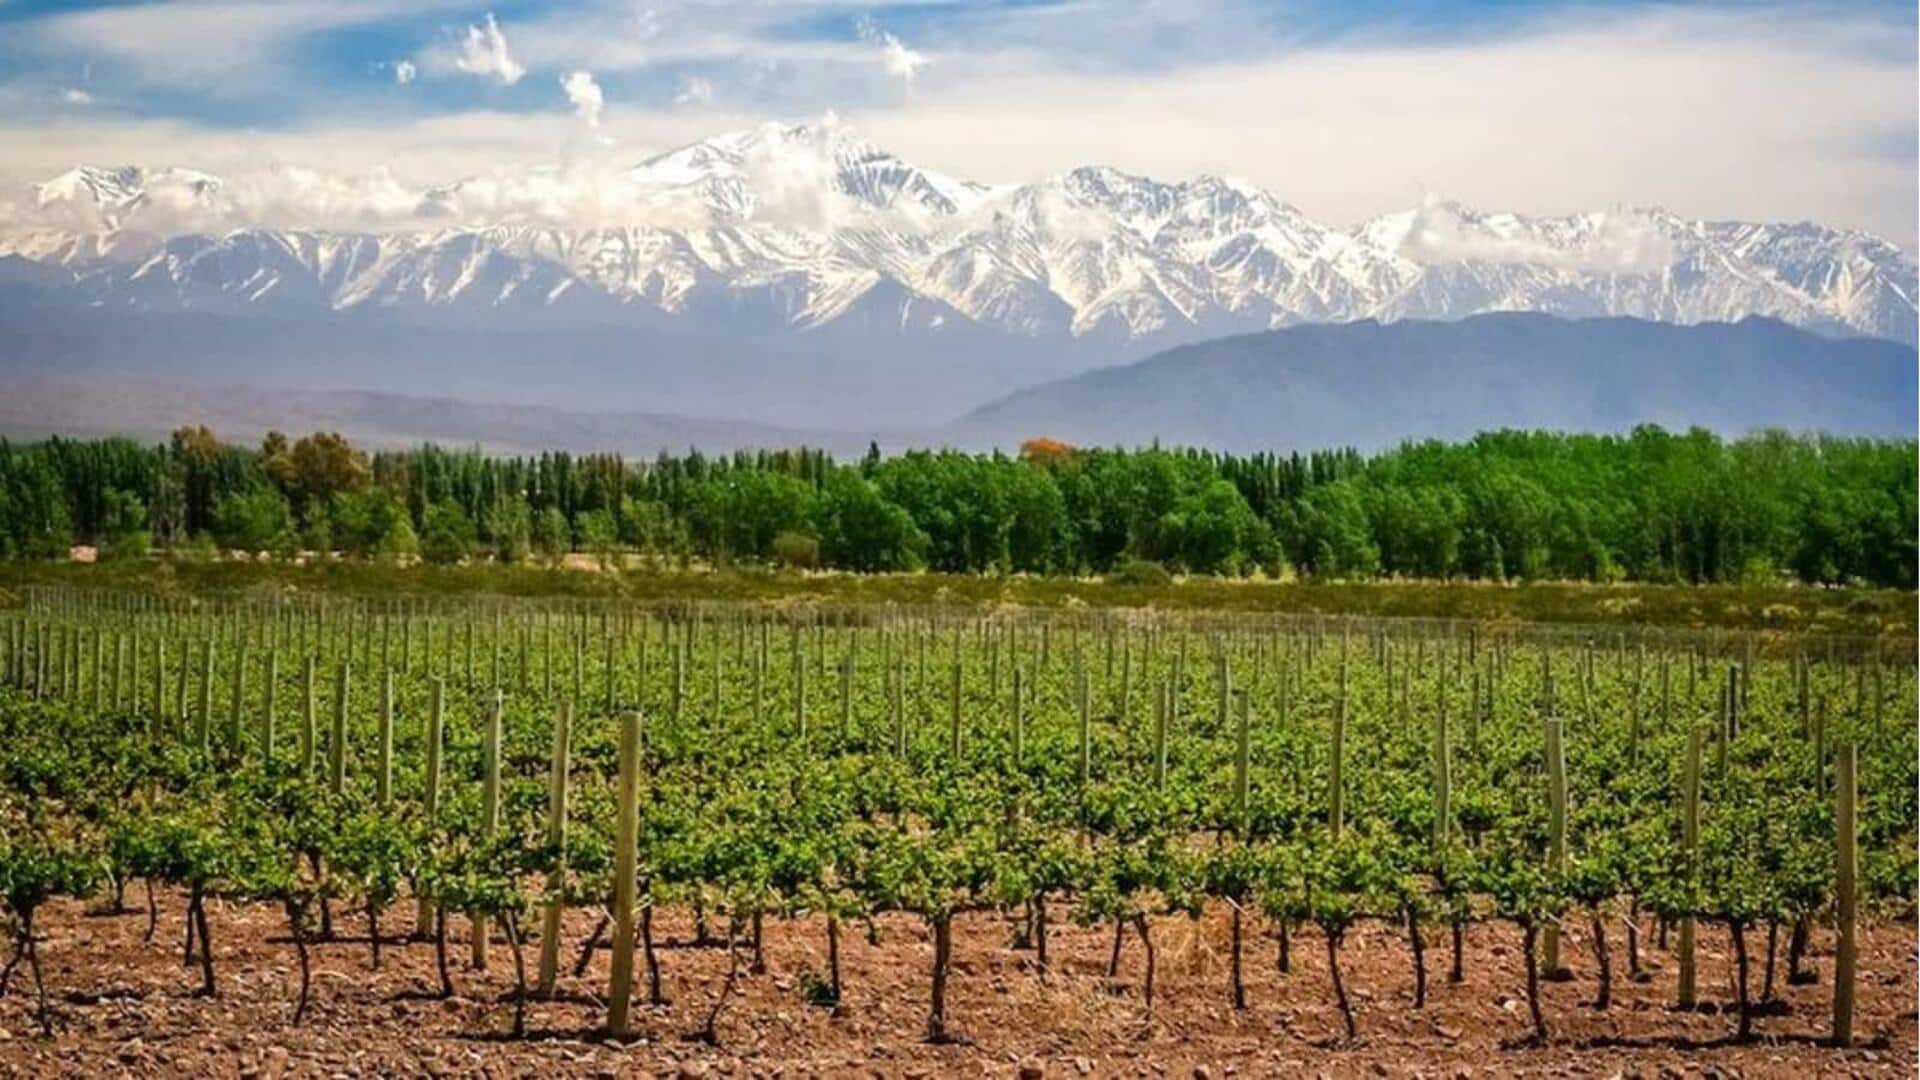 Perayaan musiman panen anggur di Mendoza, Argentina patut untuk dihadiri